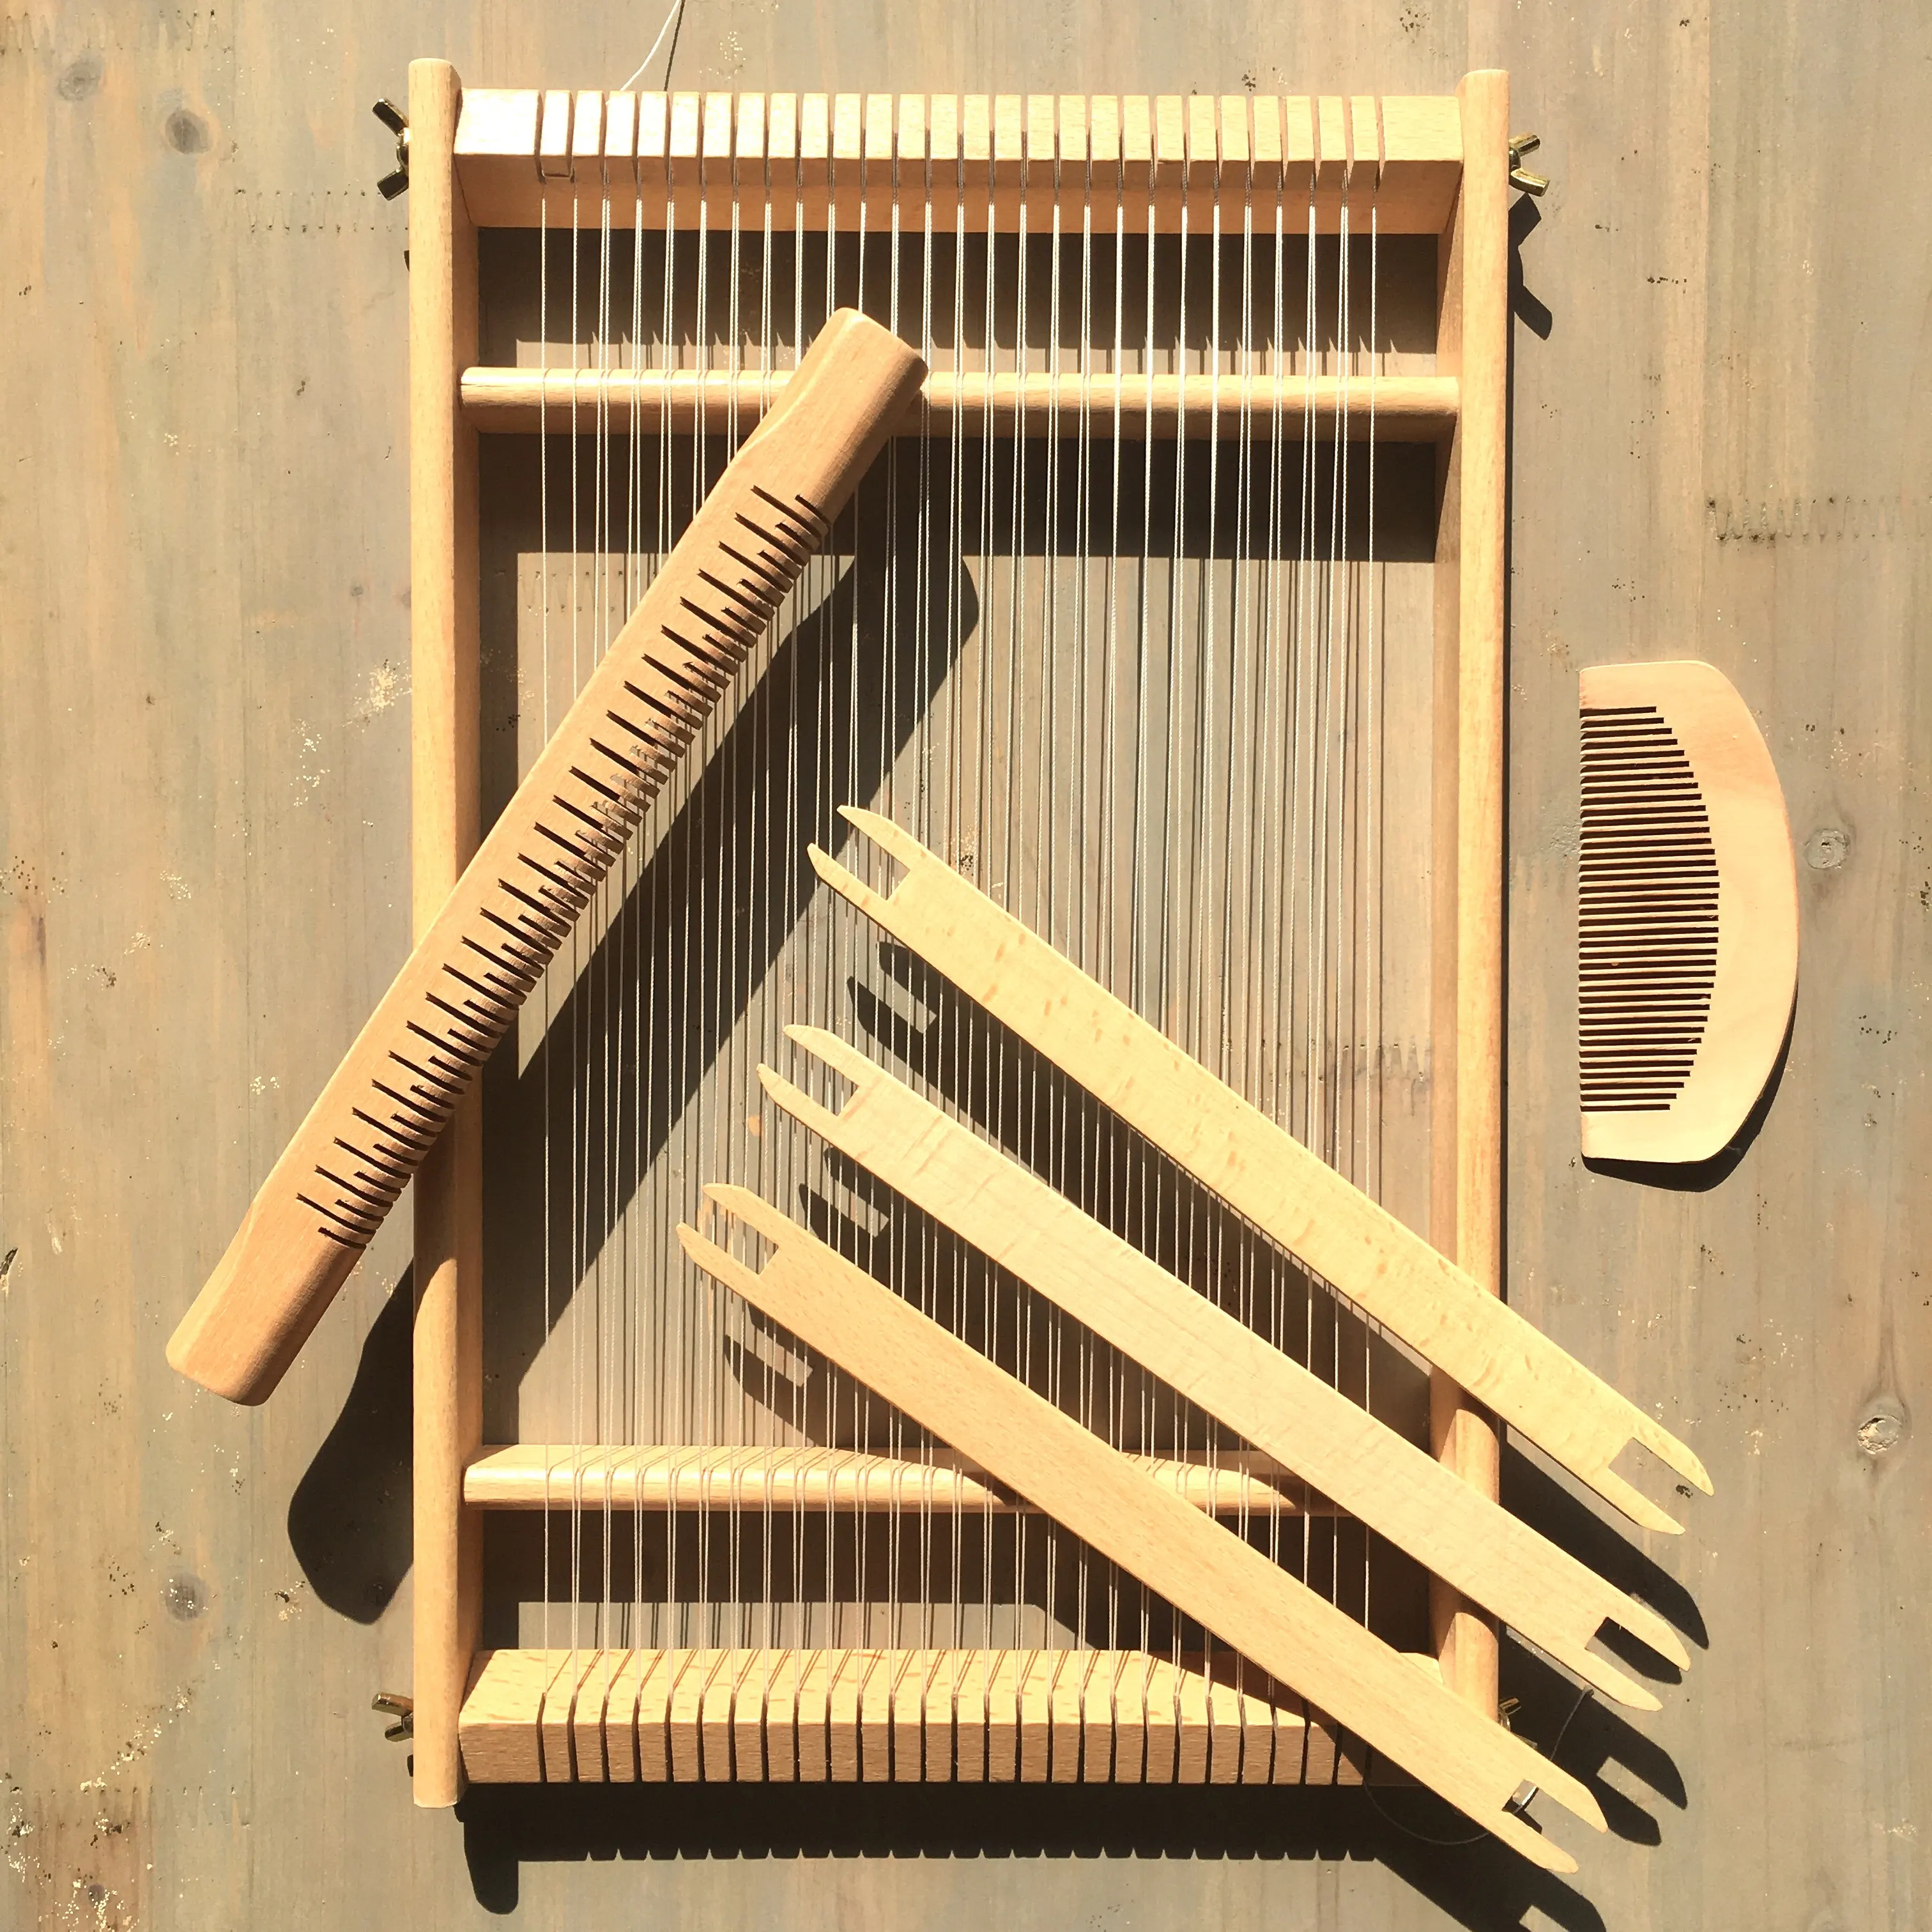 Herramienta de ganchillo artesanal hecha a mano, Kit de tejido de madera, telar de tejer